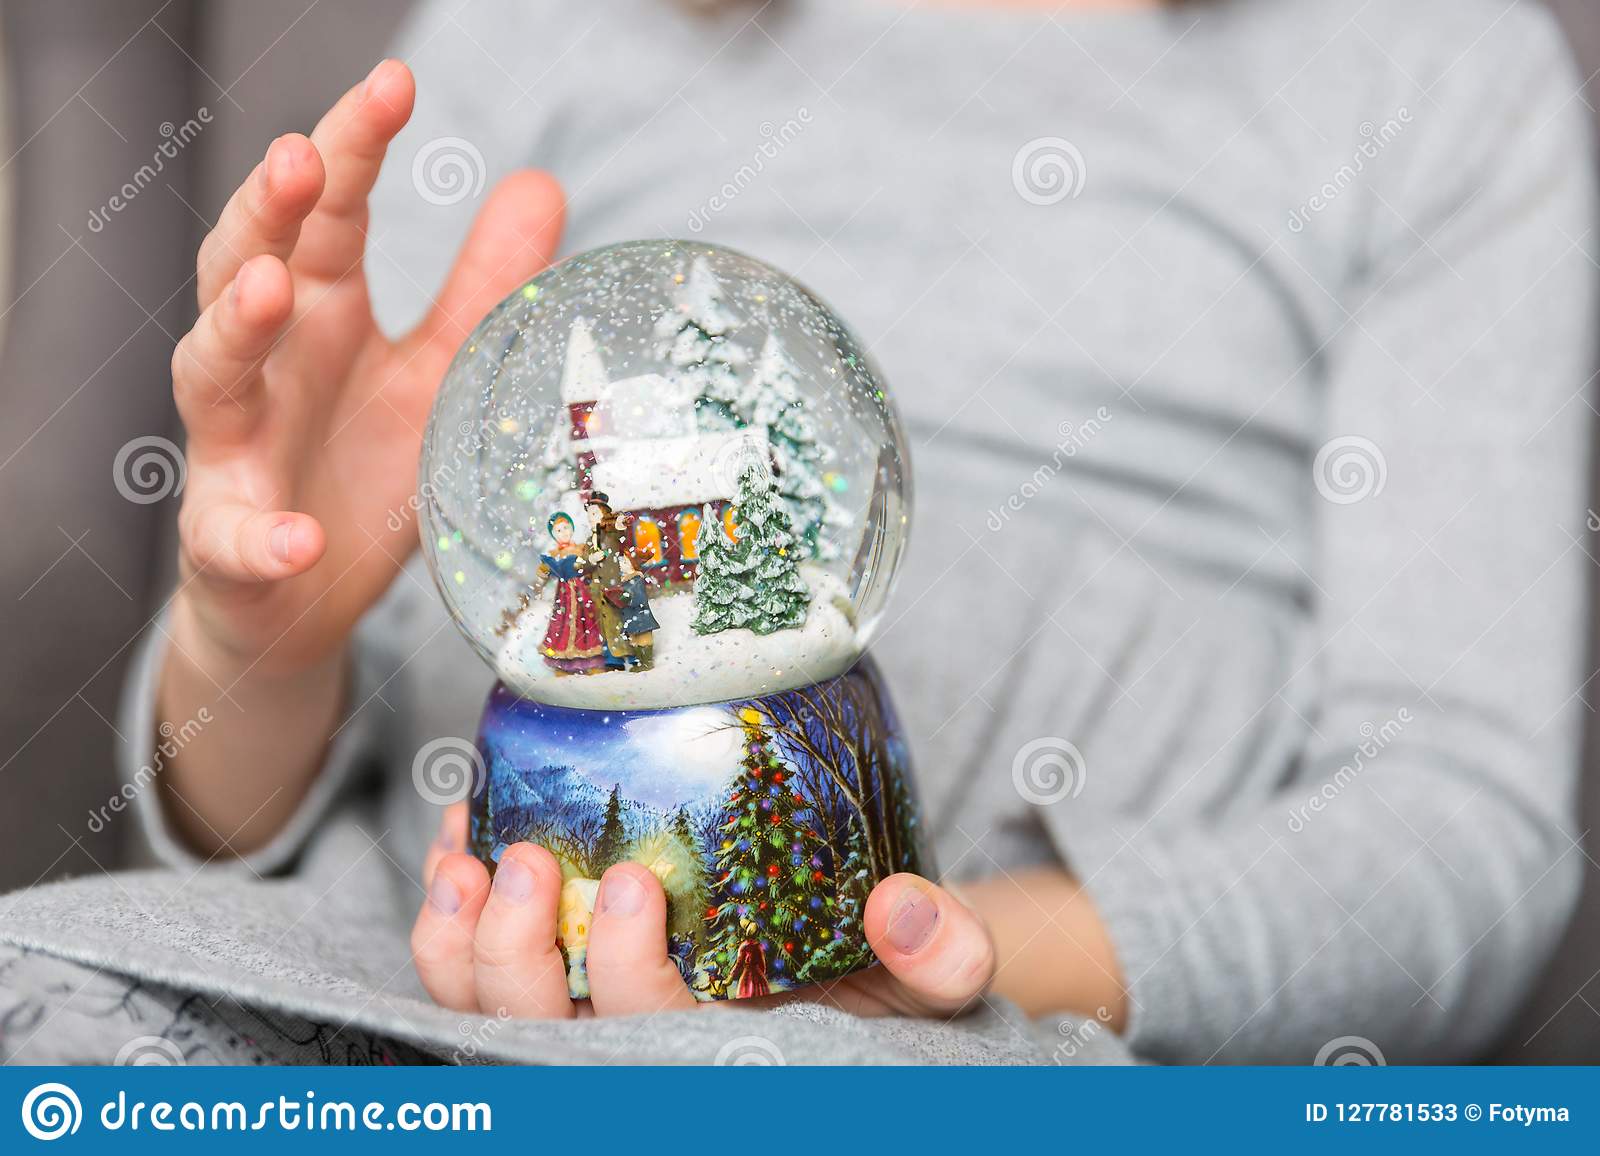 christmas-snowglobe-hands-girl-s-127781533.jpg